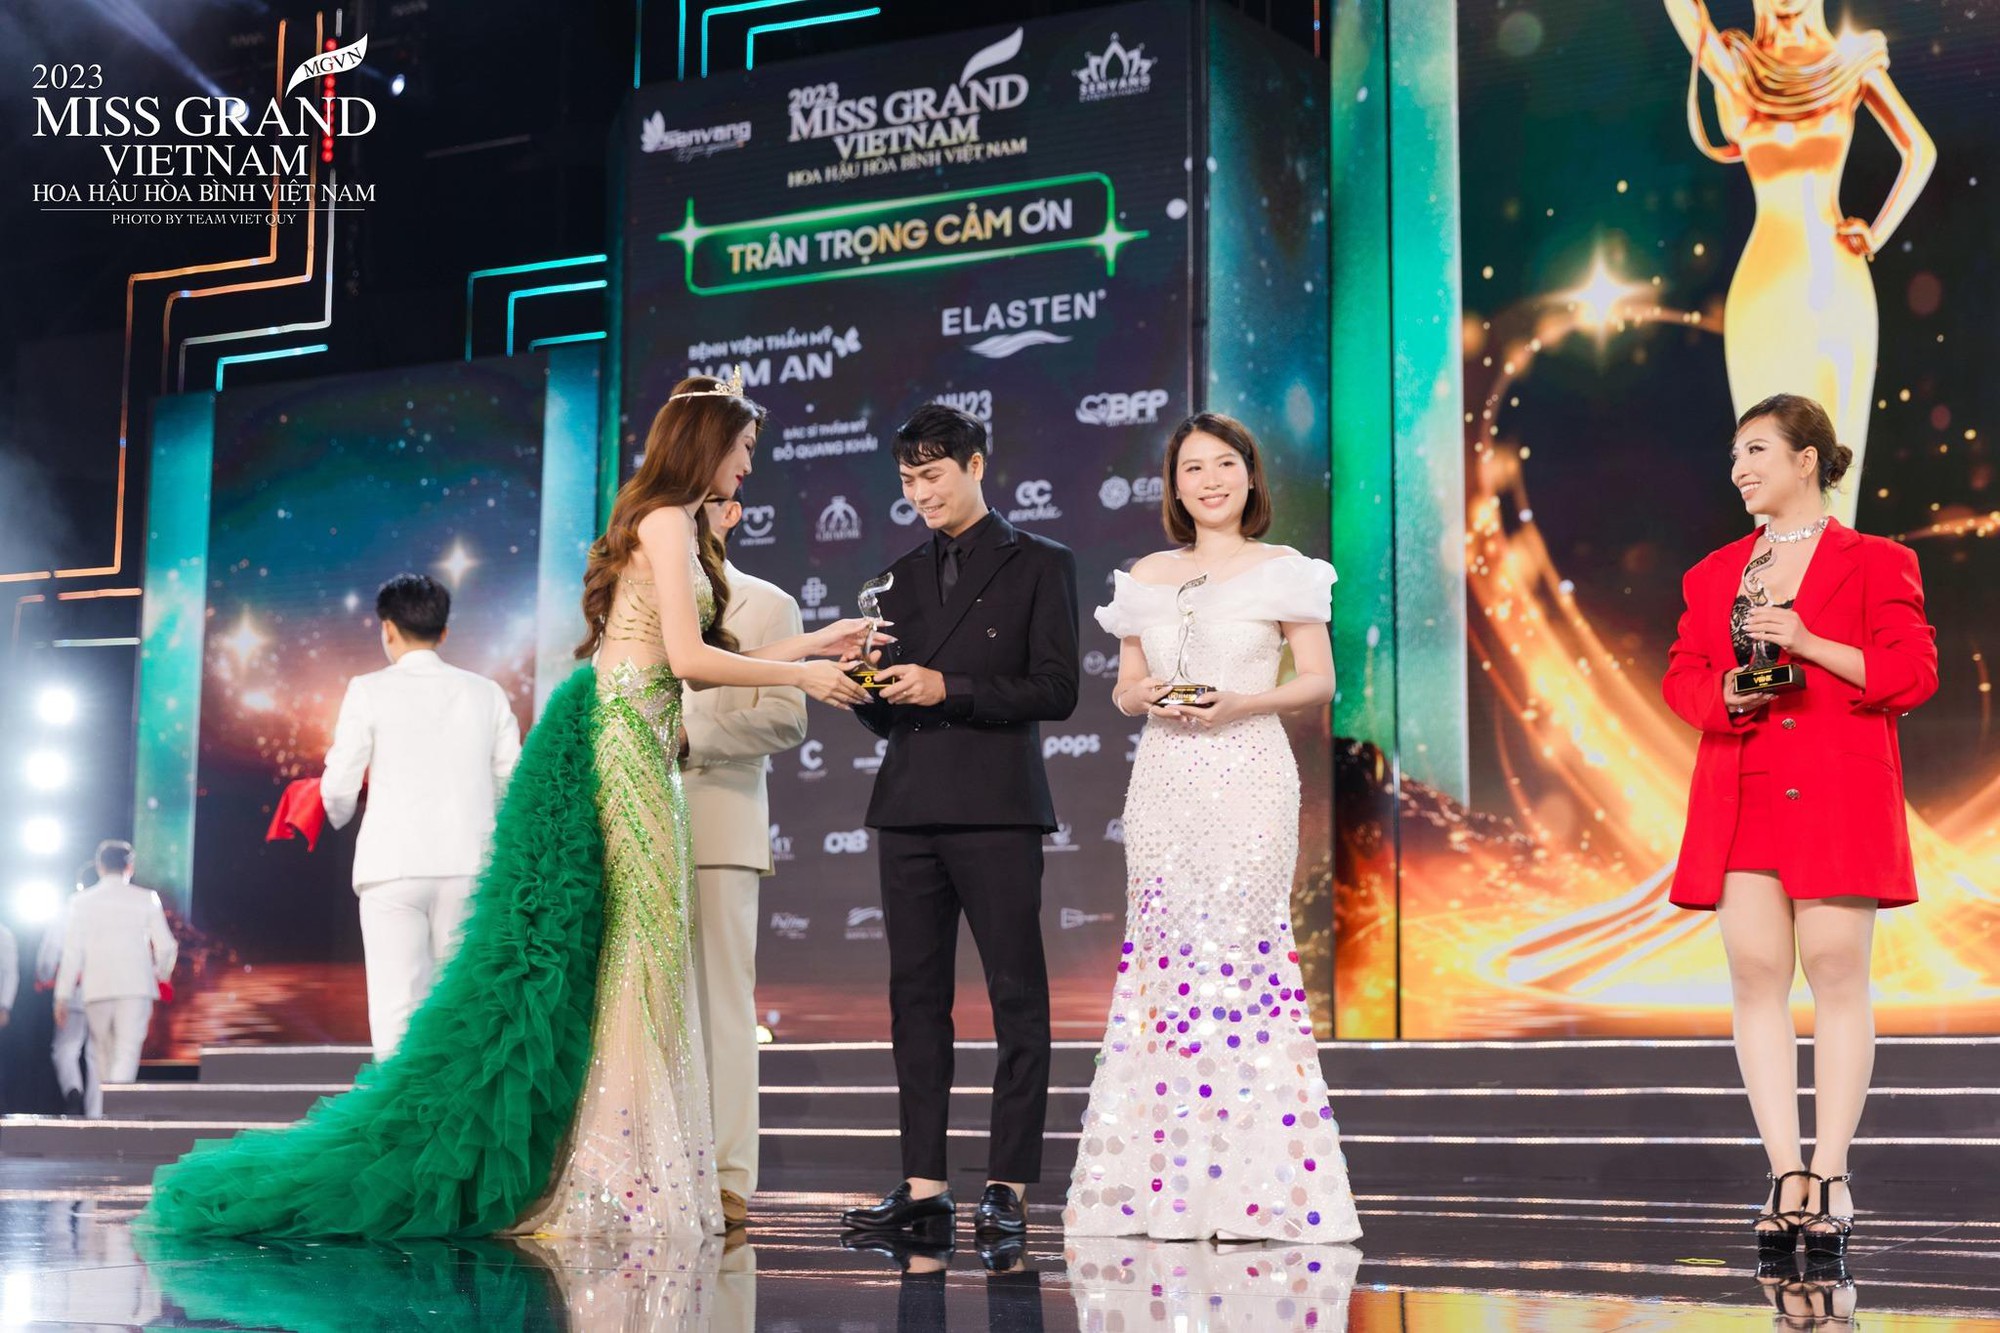 Mắt kính HMK trọn vẹn hành trình đồng hành cùng Miss Grand Vietnam 2023 - Ảnh 1.